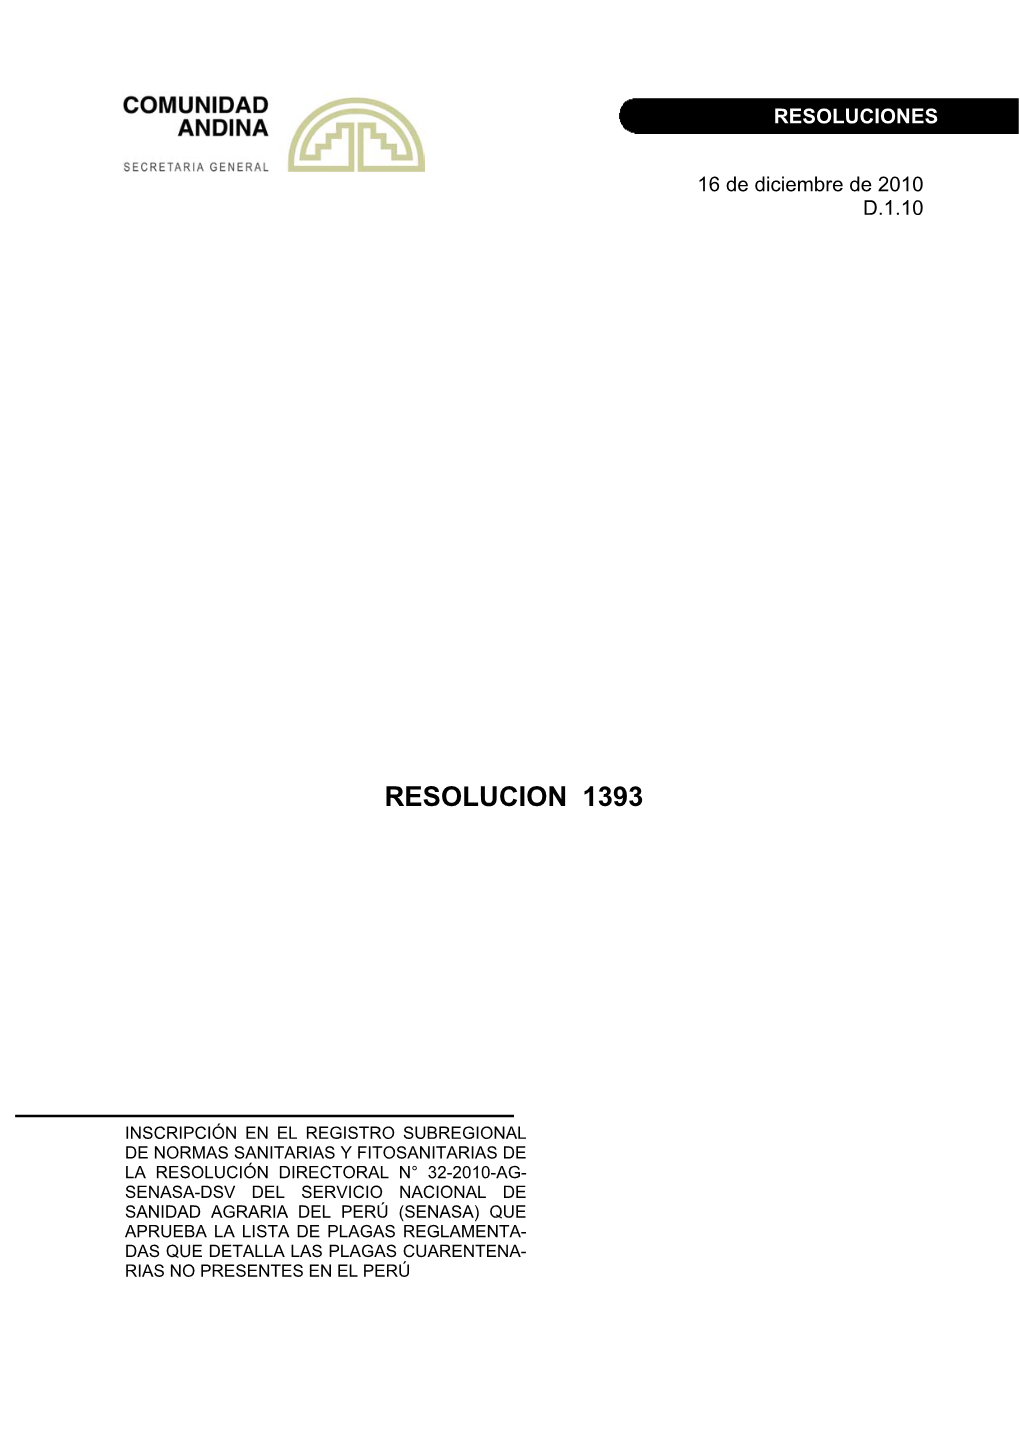 Inscripción En El Registro Subregional De Normas Sanitarias Y Fitosanitarias De La Resolución Directoral N° 32-2010-Ag-Senasa